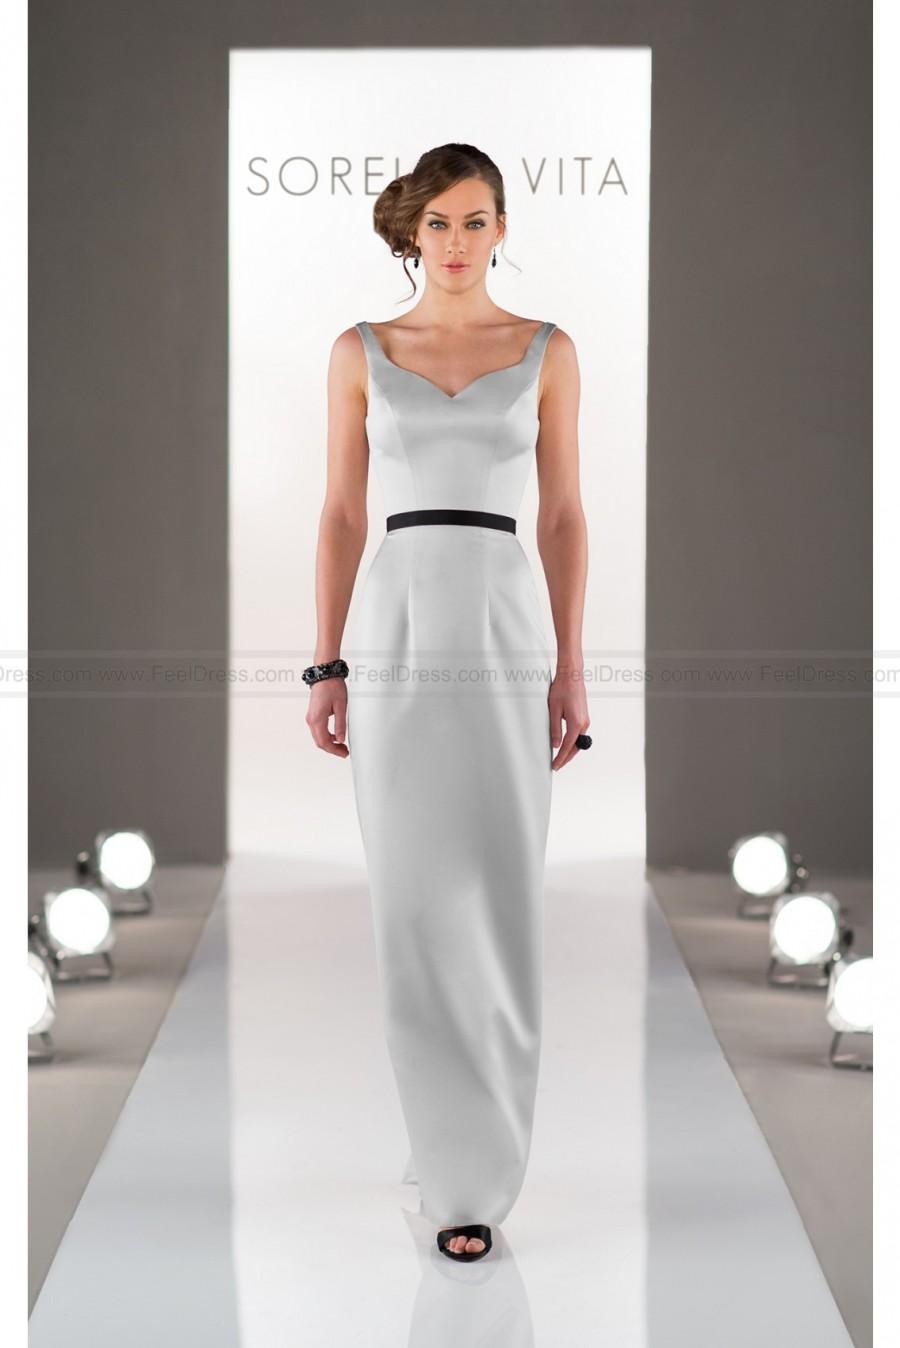 زفاف - Sorella Vita Elegant Bridesmaid Dress In Satin Style 8507